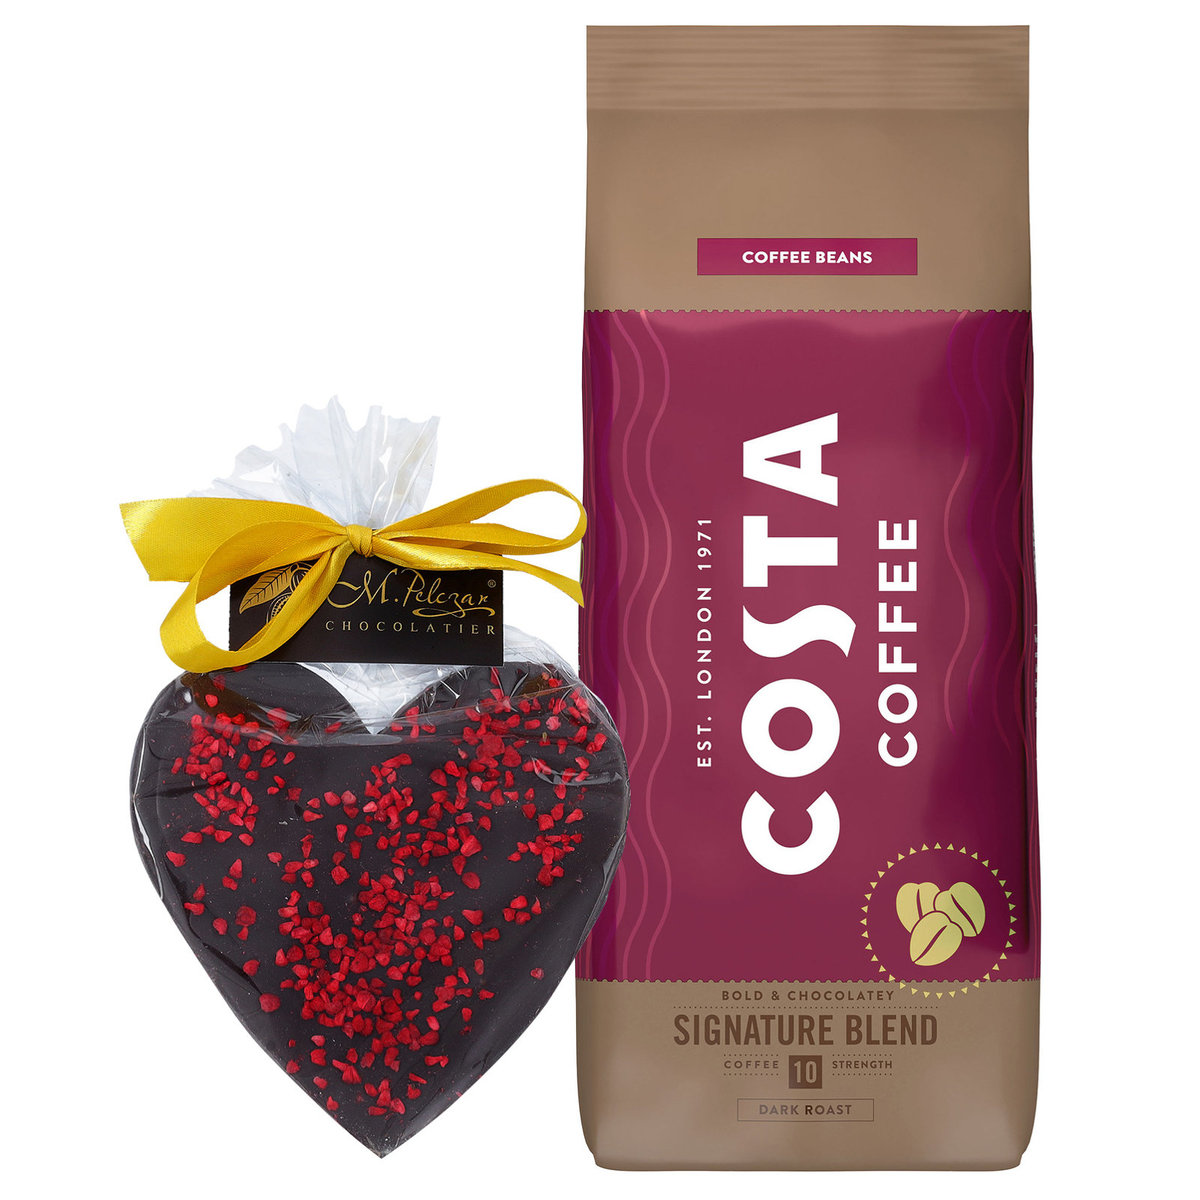 Kawa ziarnista Costa Coffee Signature Blend Dark Roast 1kg + PREZENT Serce z gorzkiej czekolady M.Pelczar Chocolatier